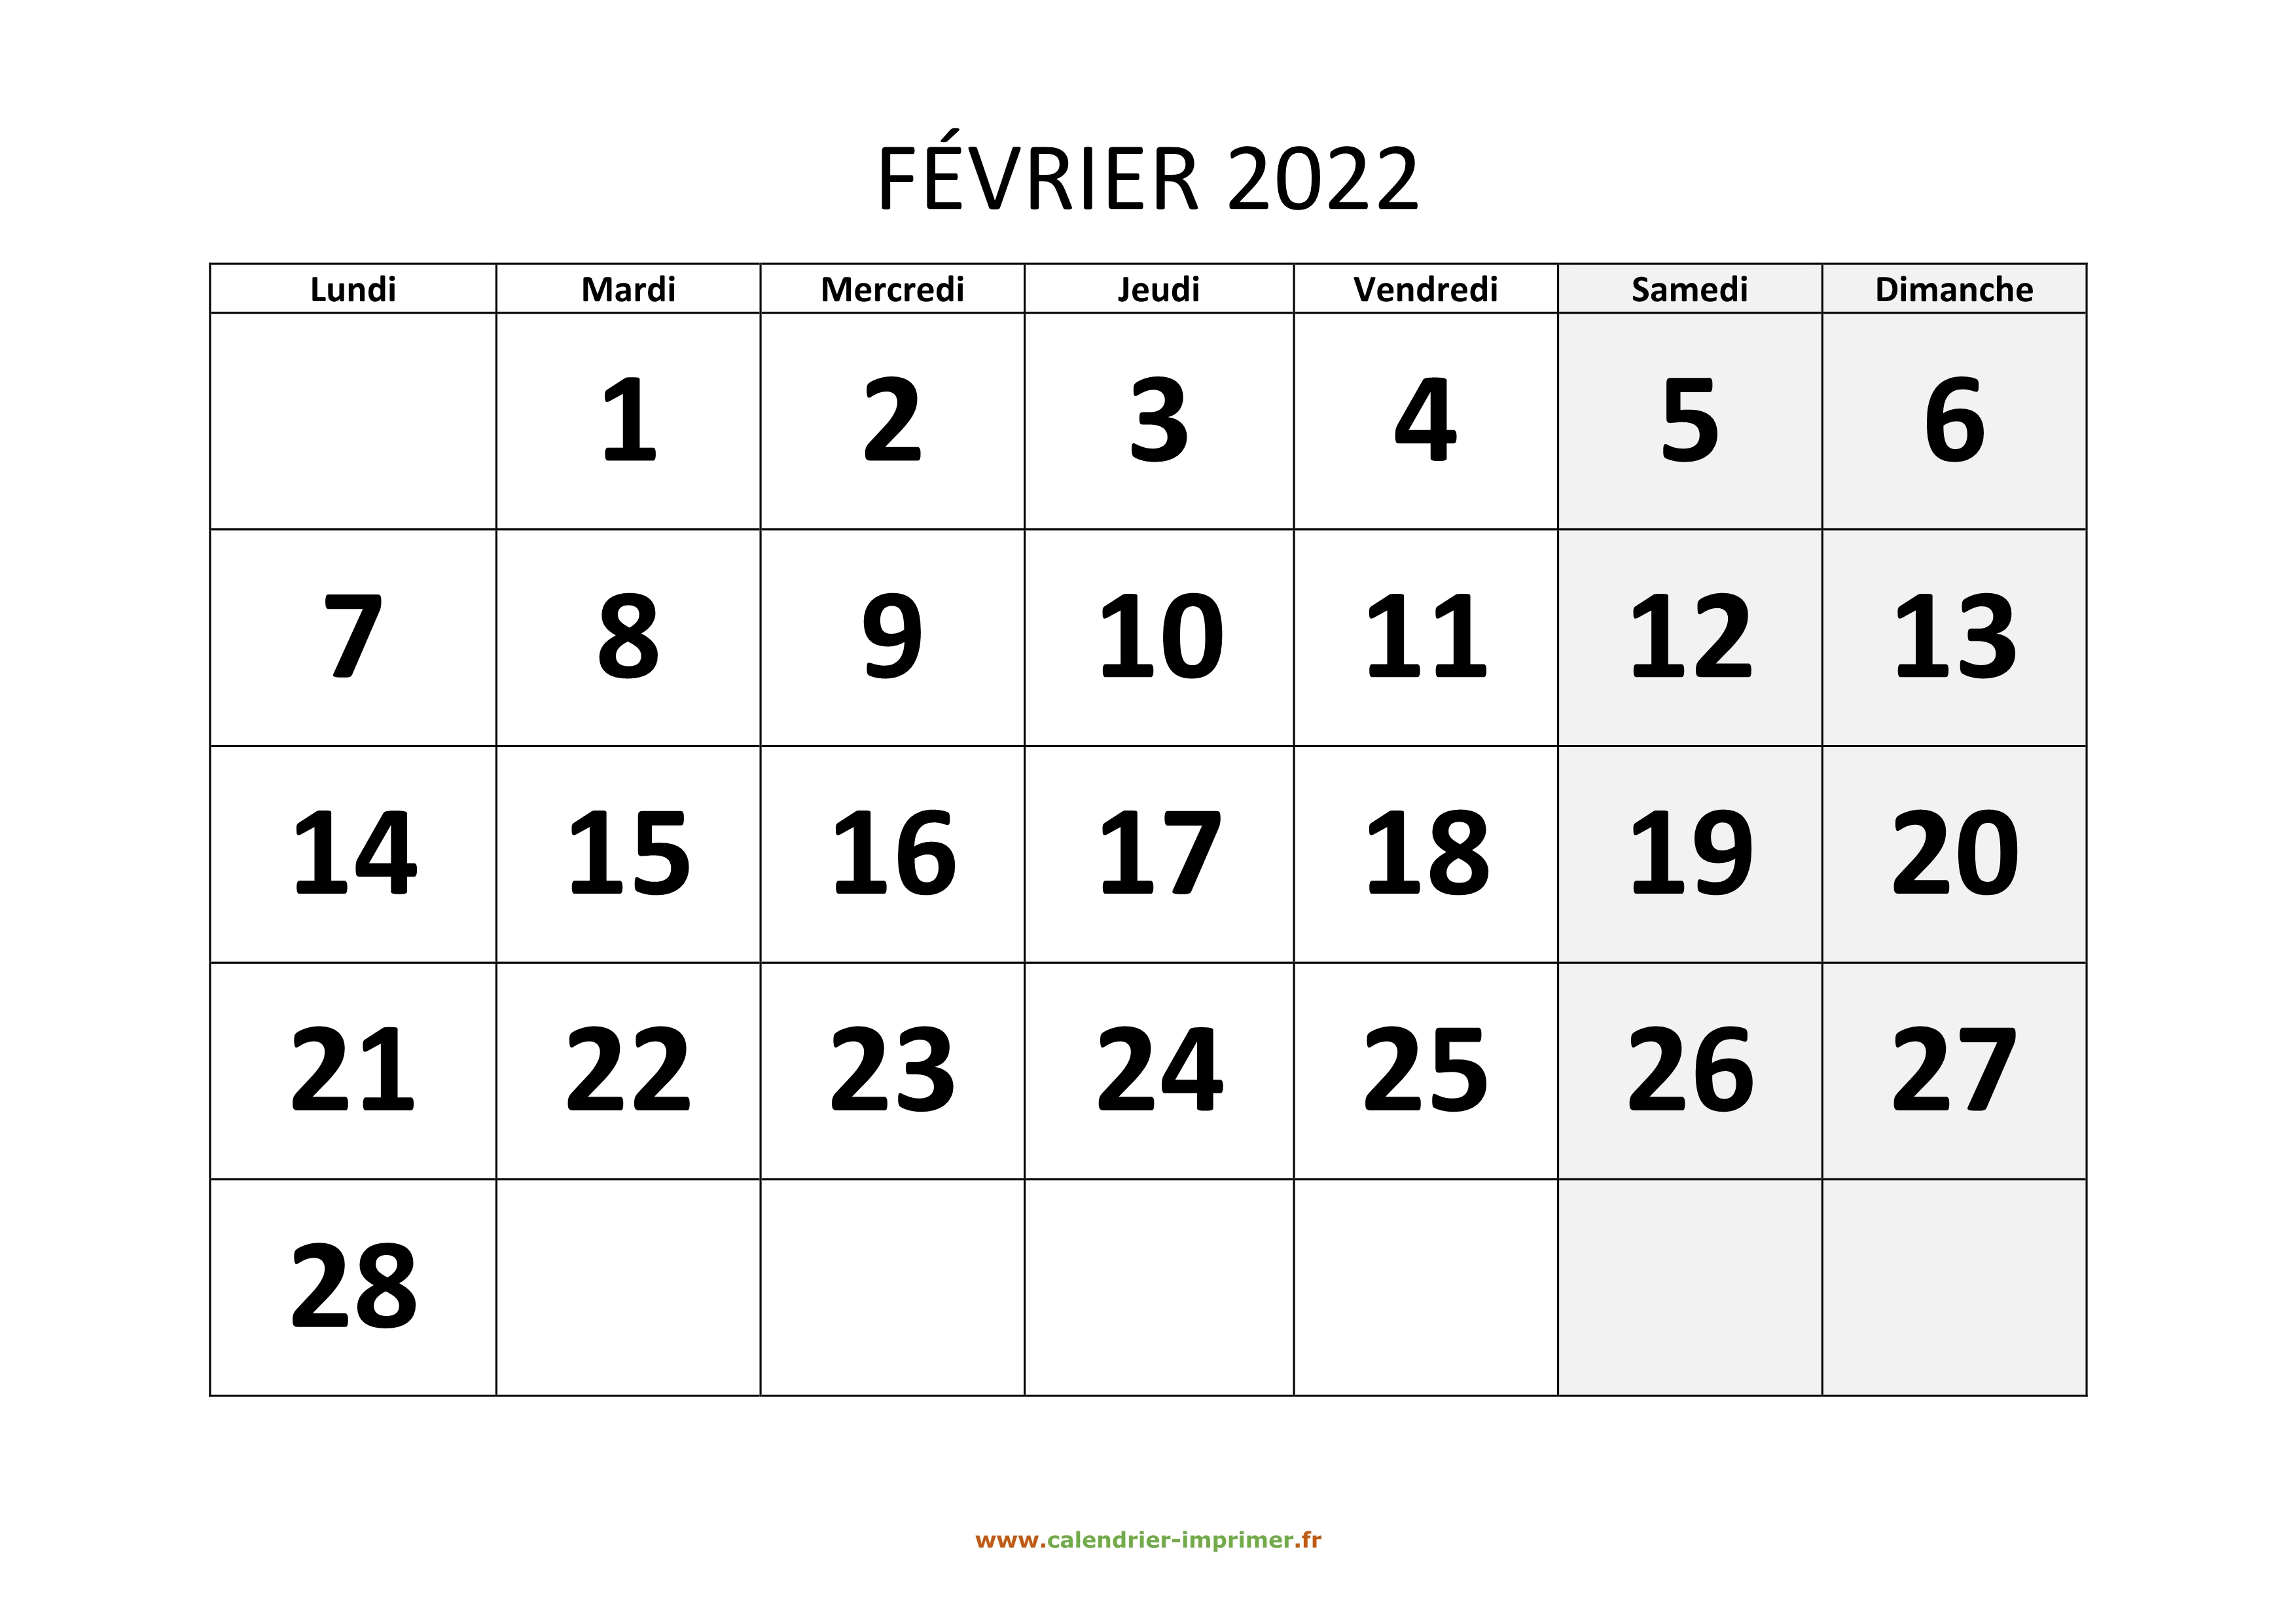 Février 2022 Calendrier Calendrier Février 2022 à imprimer